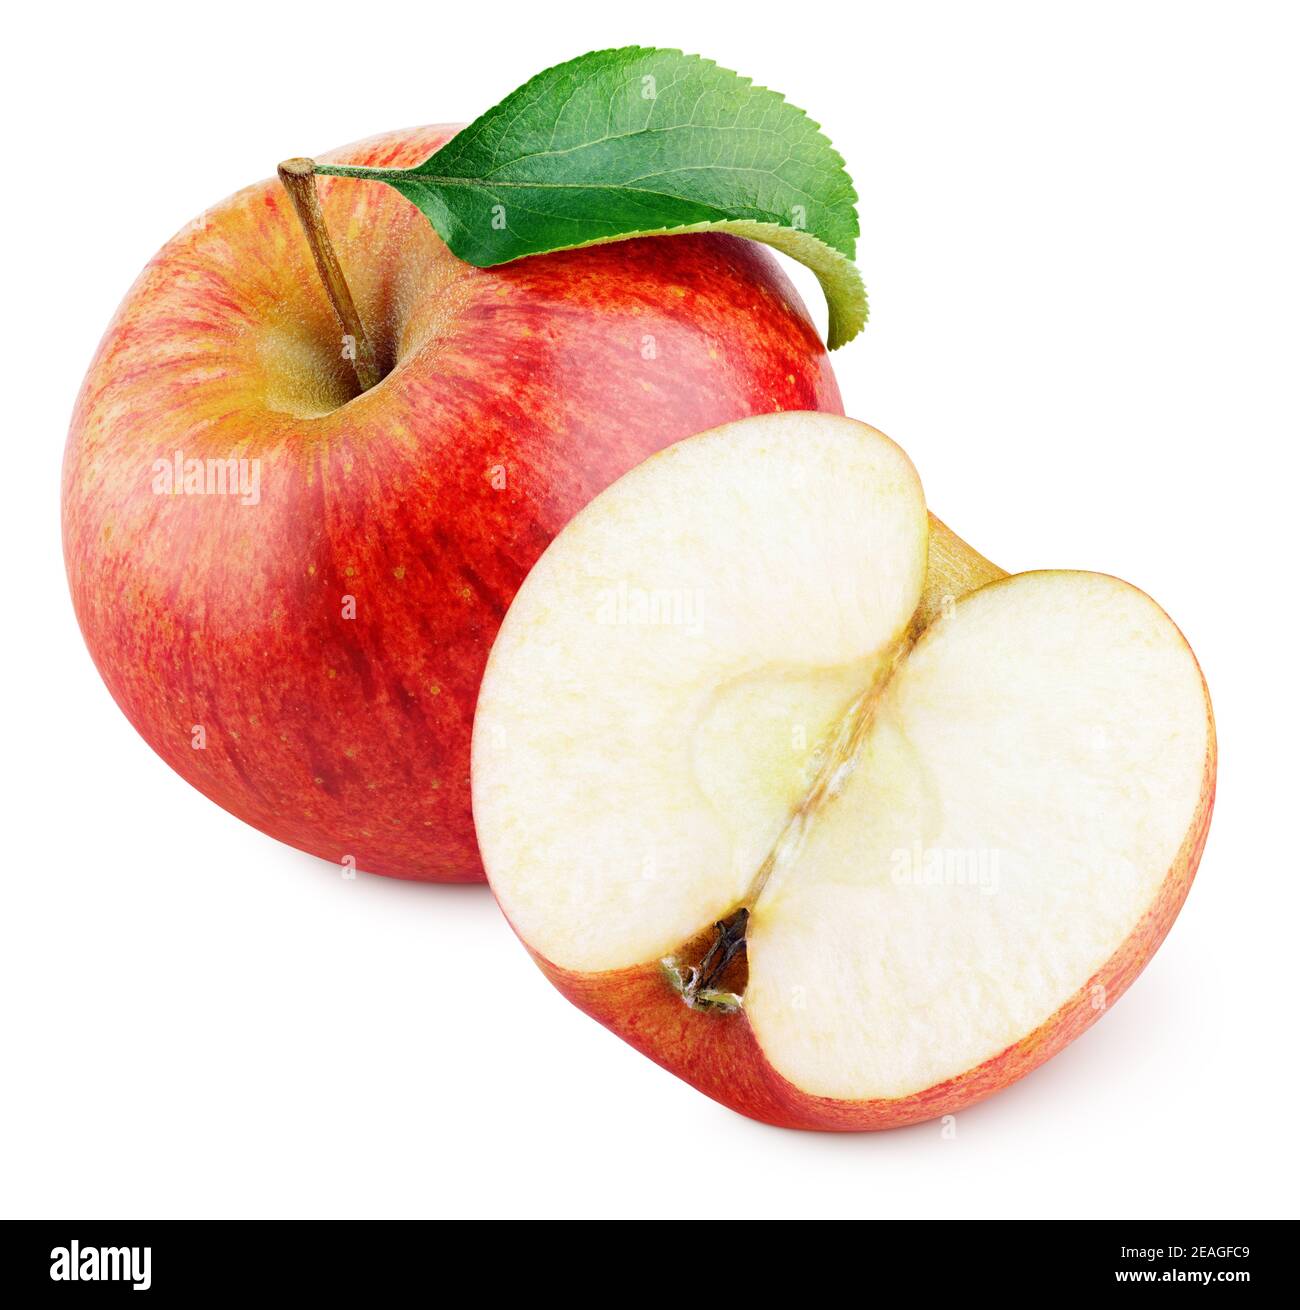 Mela rossa matura con mezzo di mela senza semi e foglia di mela isolata su sfondo bianco con percorso di ritaglio. Profondità di campo completa. Foto Stock